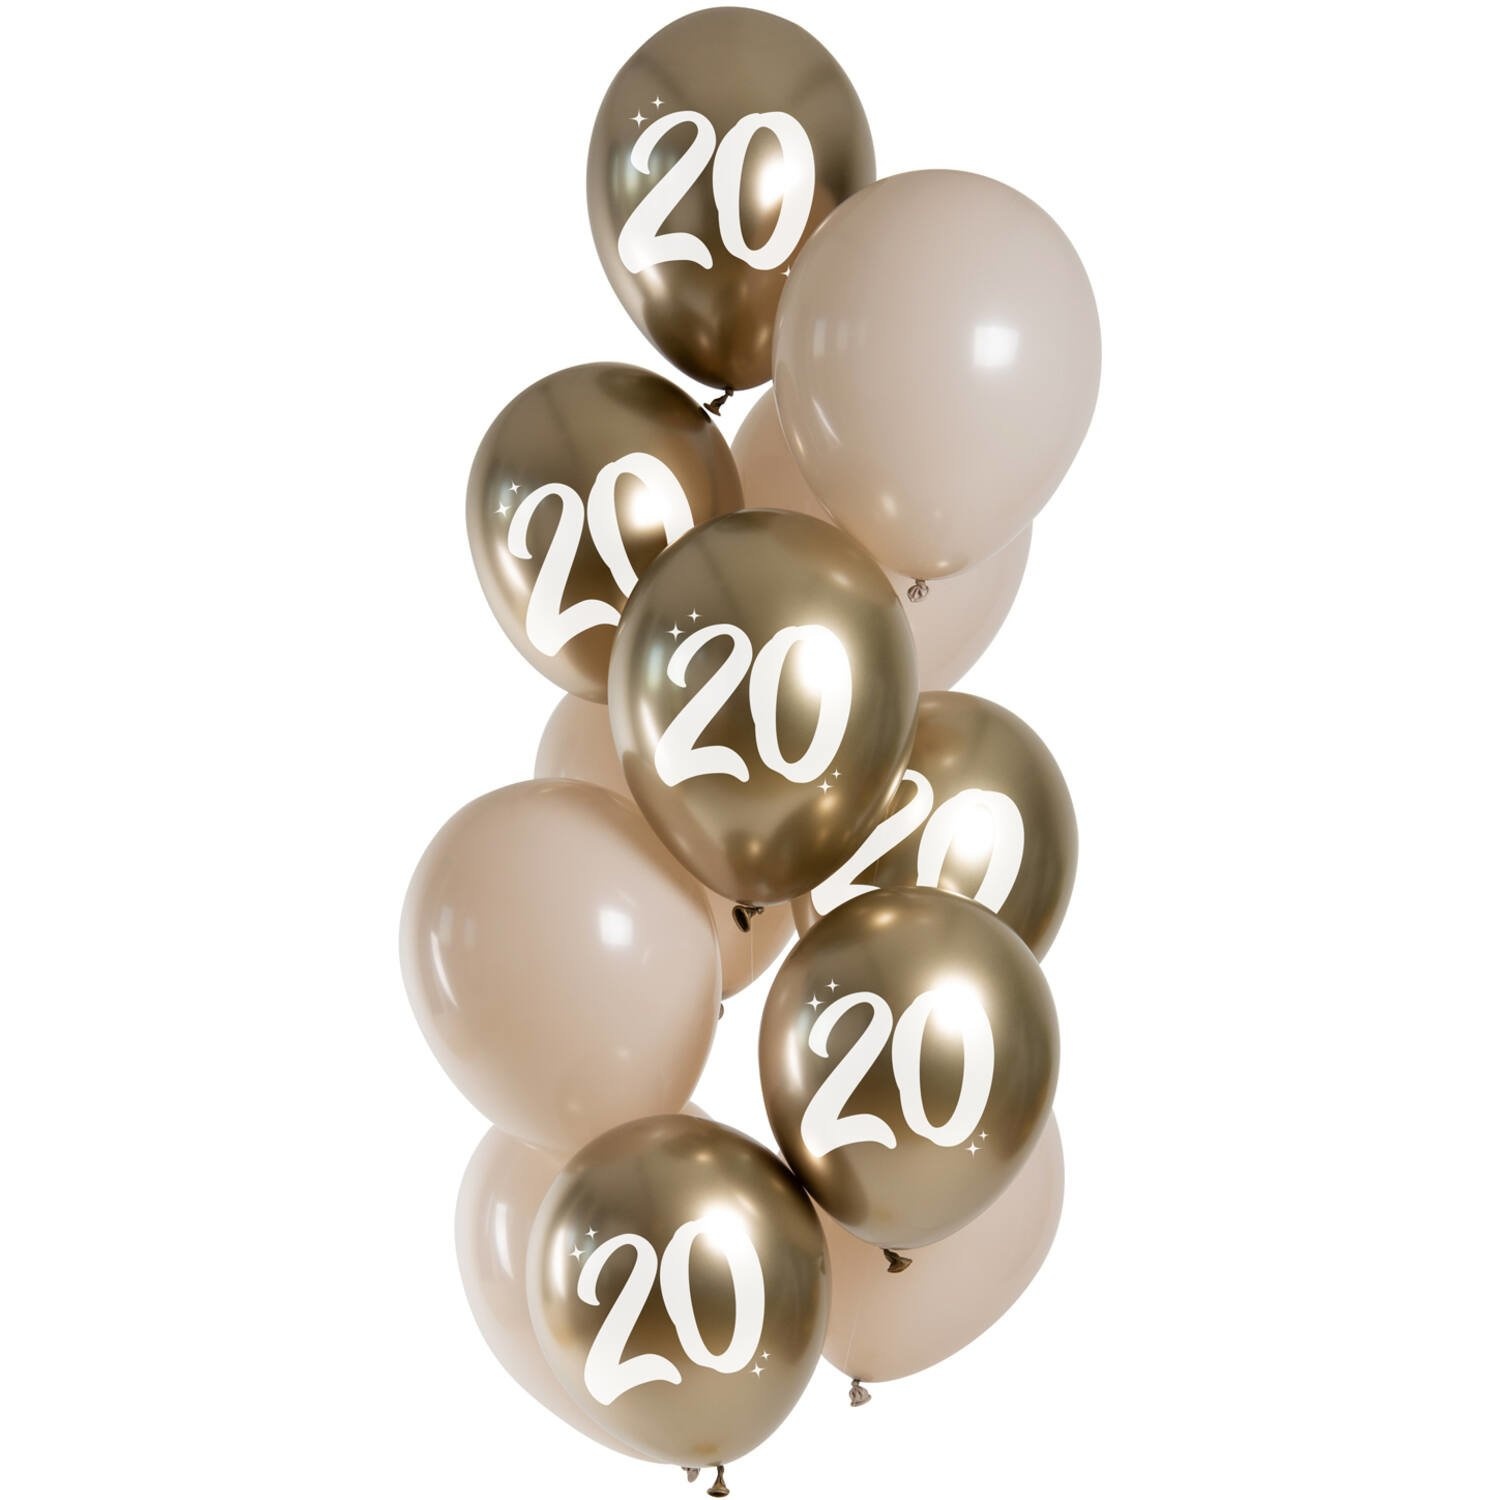 Ballons 20 ans Happy 20th 33cm 6pcs - Partywinkel